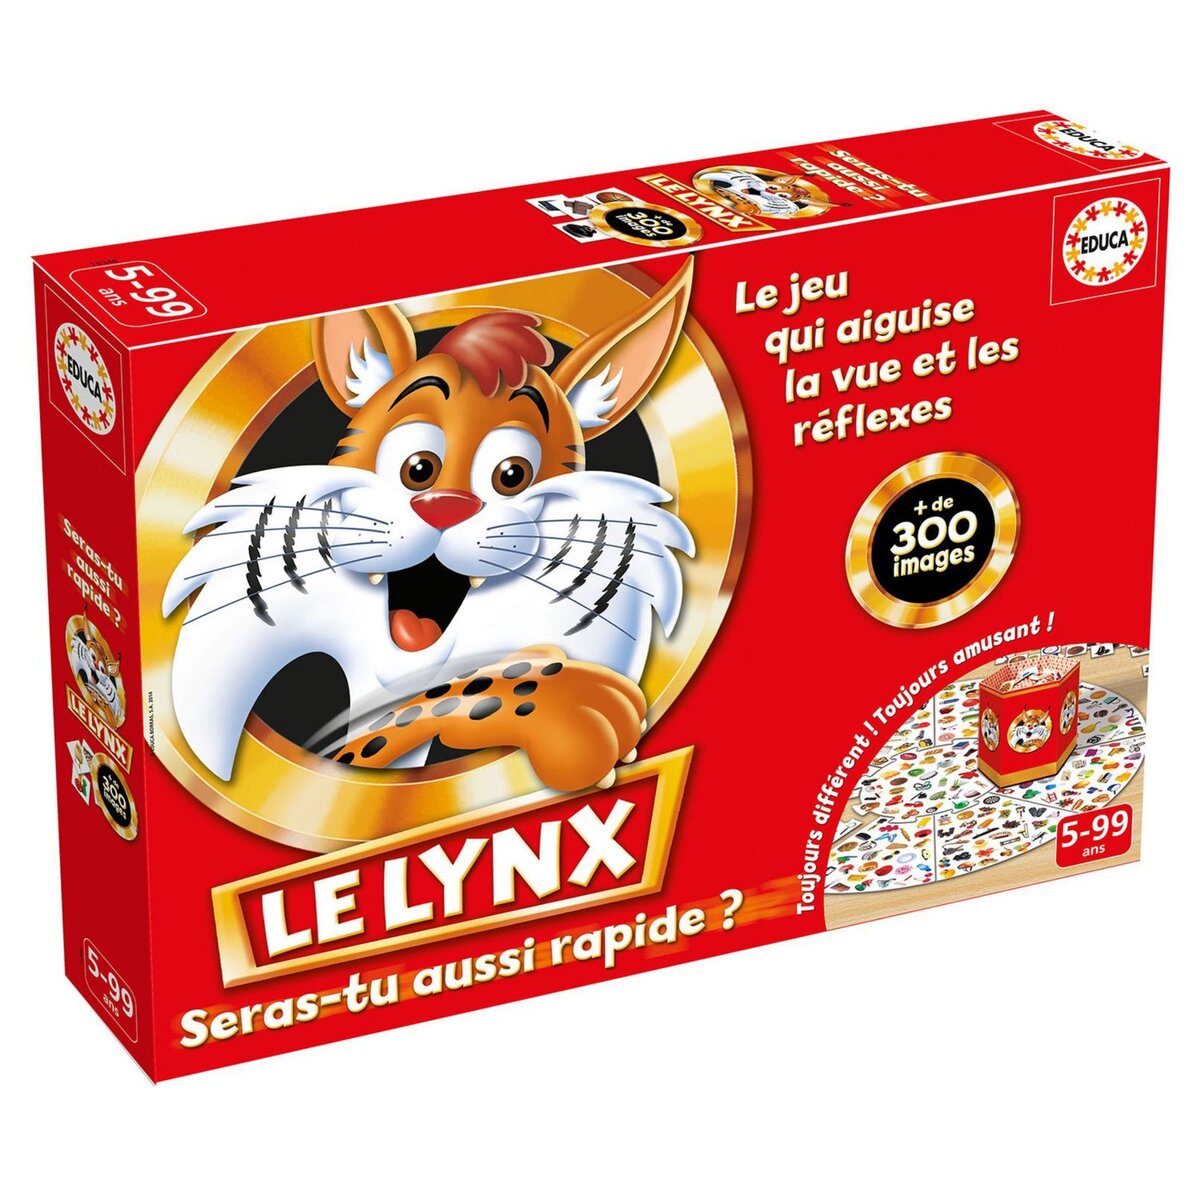 EDUCA Le Lynx 300 images